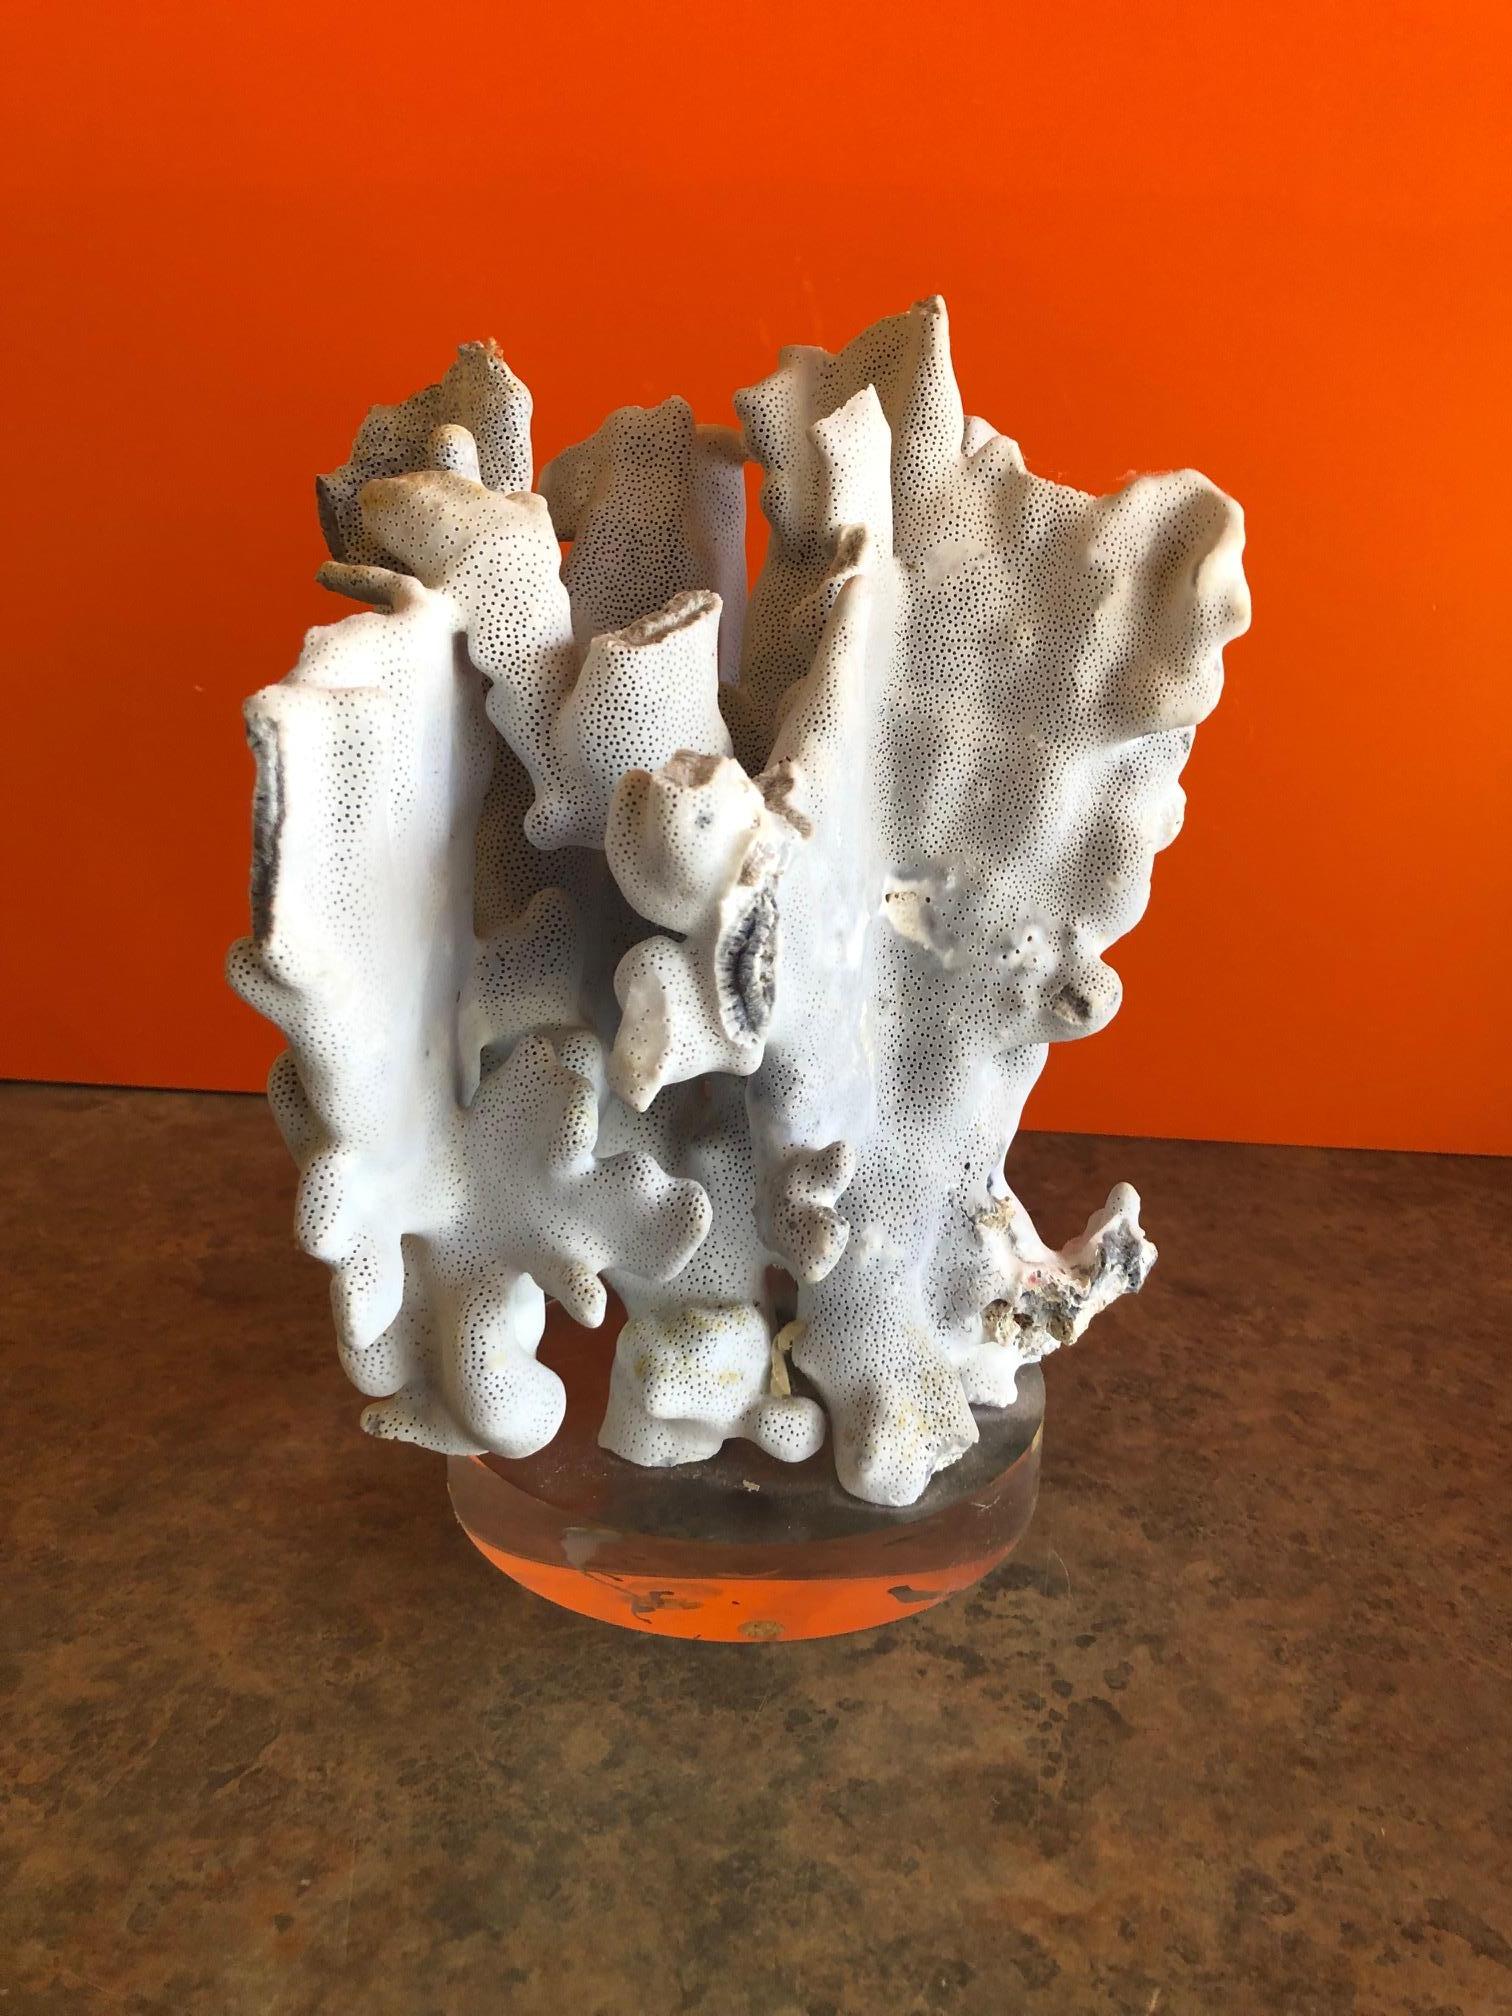 Hollywood Regency Blue Coral Organic Sculptural Specimen on Lucite Base